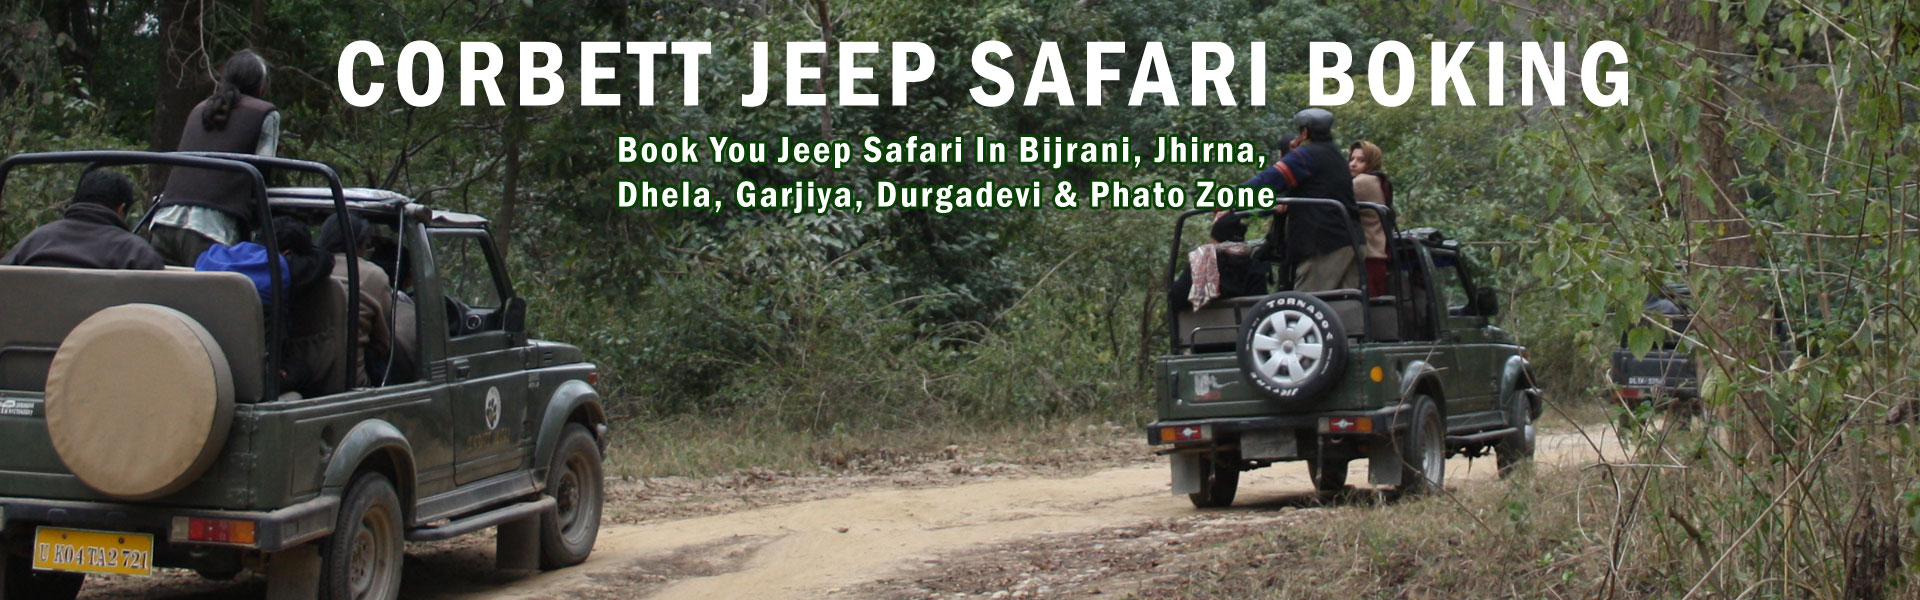 Corbett Jeep Safari Booking Banner